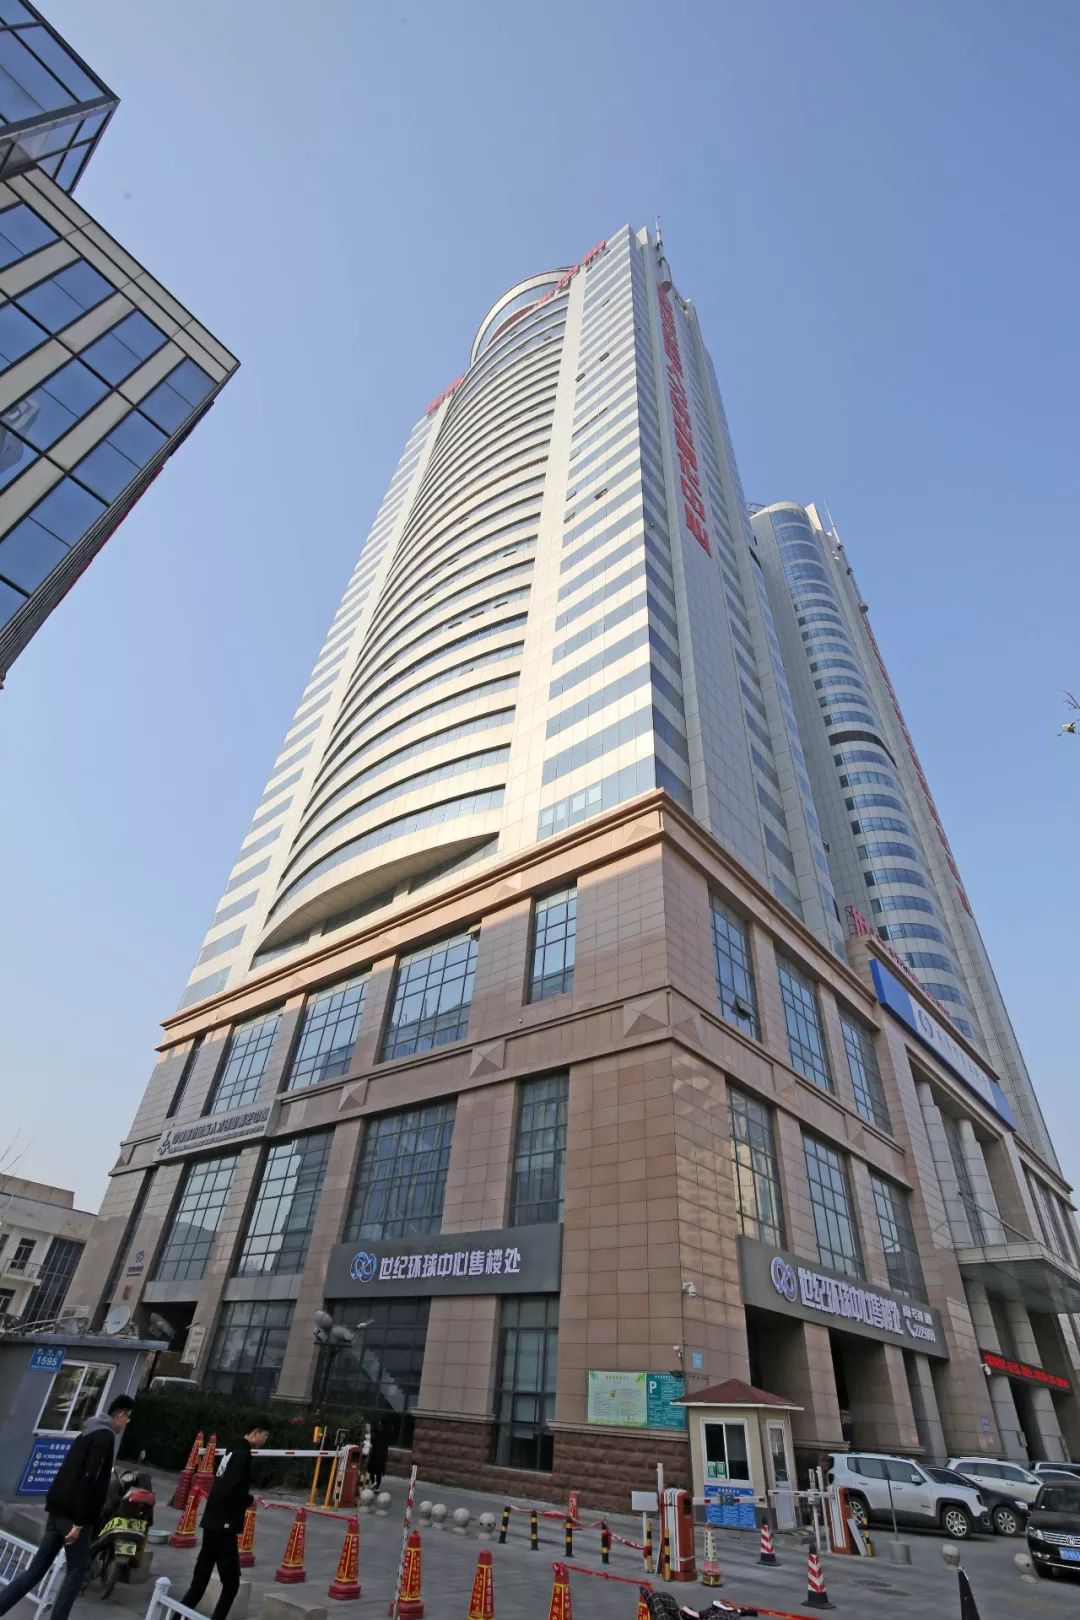 潍坊市中心高楼大厦图片